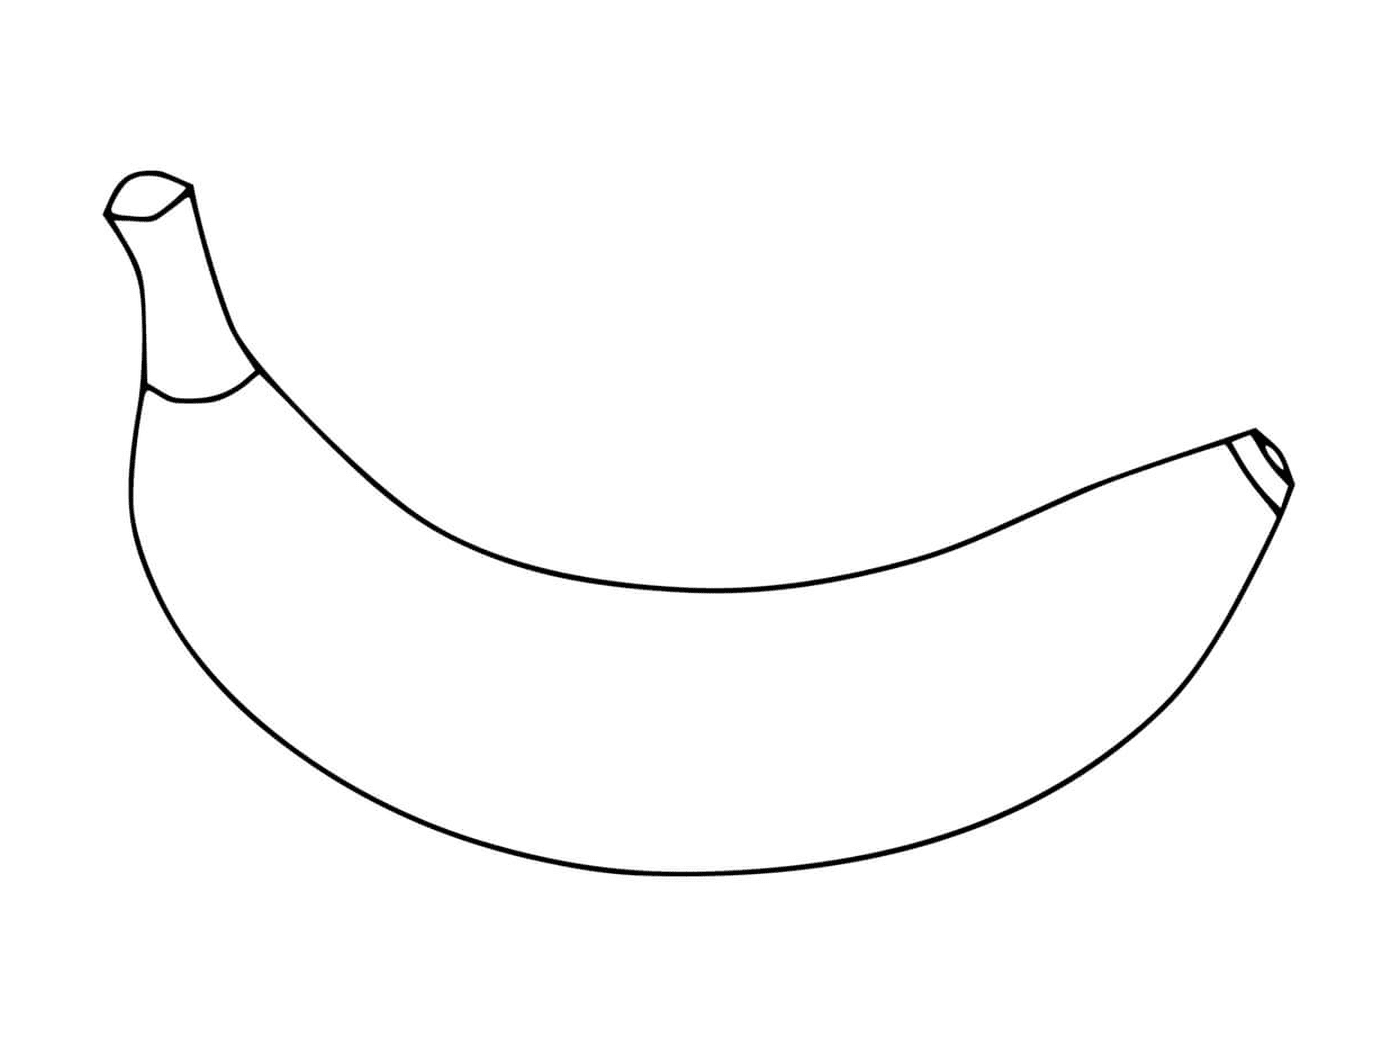  Ein Bild einer Banane 